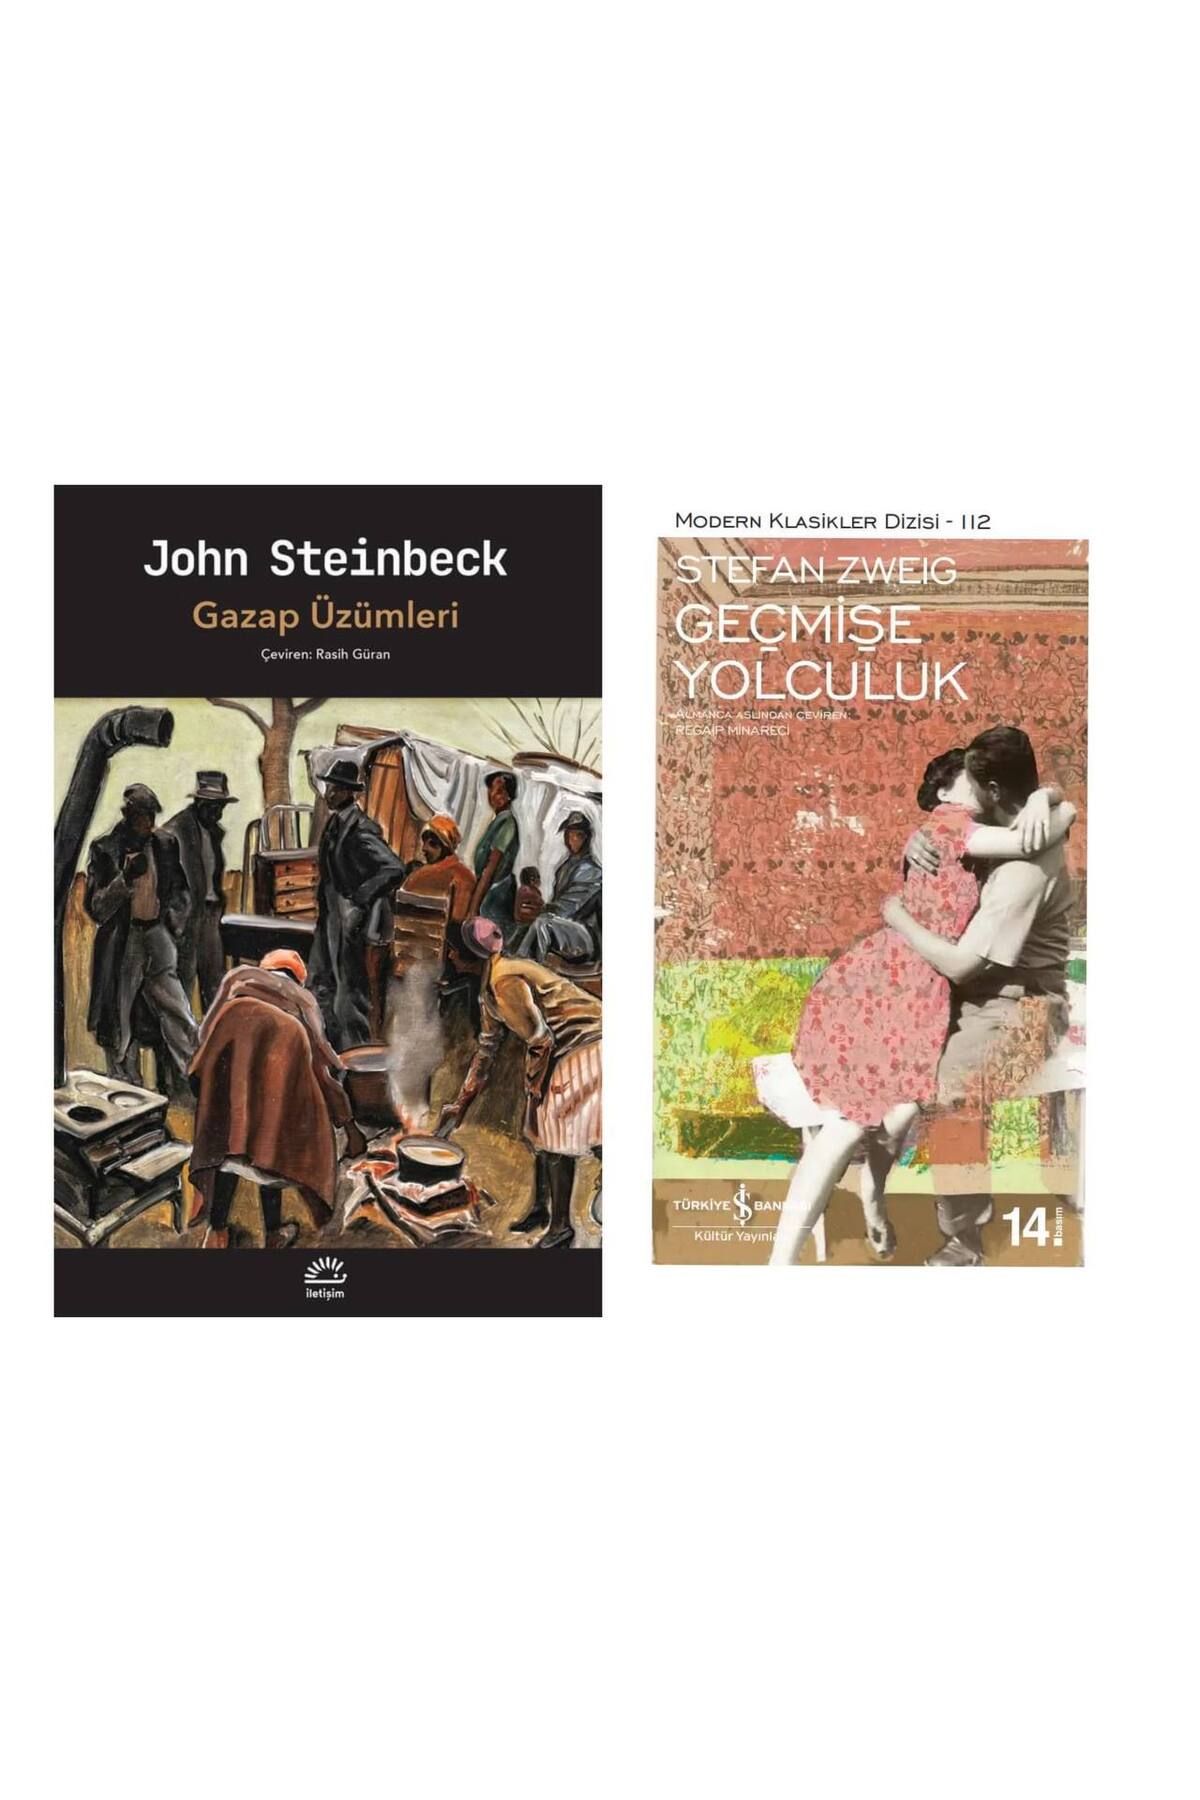 İletişim Yayınları Gazap Üzümleri - John Steinbeck - Geçmişe Yolculuk - Stefan Zweig